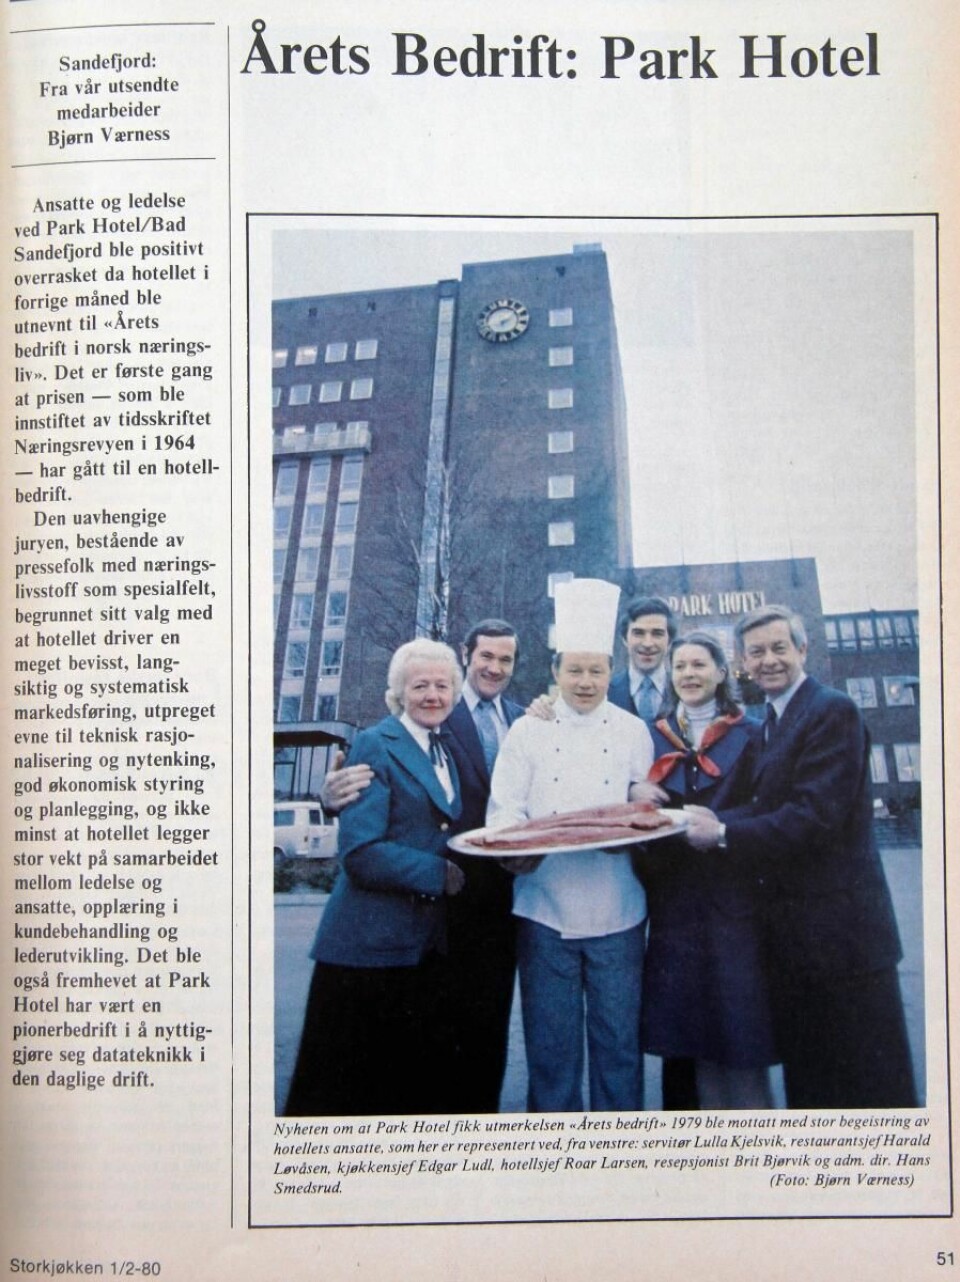 Edgar Ludl og andre ledere på Park Hotel etter at hotellet ble kåret til Årets bedrift. (Faksimile fra Storkjøkken)